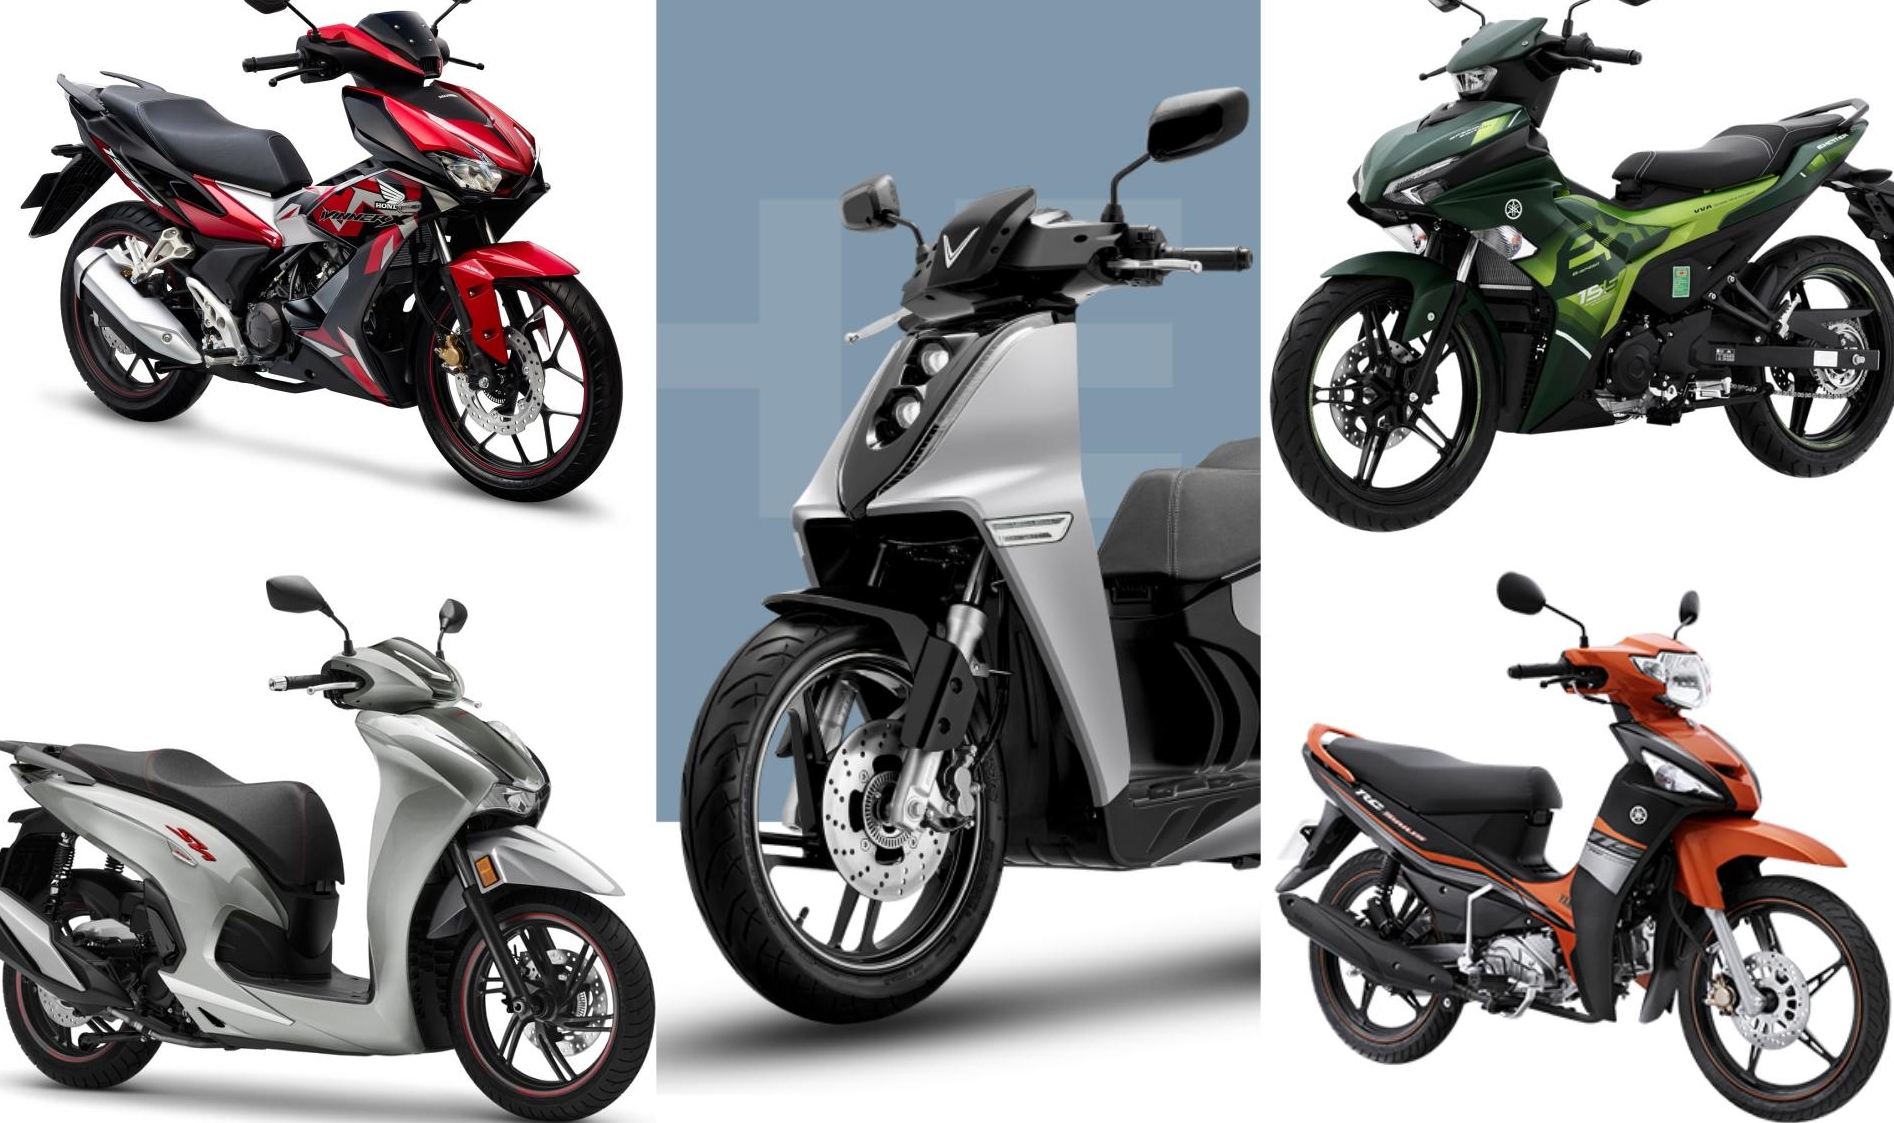 Honda chiếm bao nhiêu thị phần xe máy tại Việt Nam  Automotive  Thông  tin hình ảnh đánh giá xe ôtô xe máy xe điện  VnEconomy